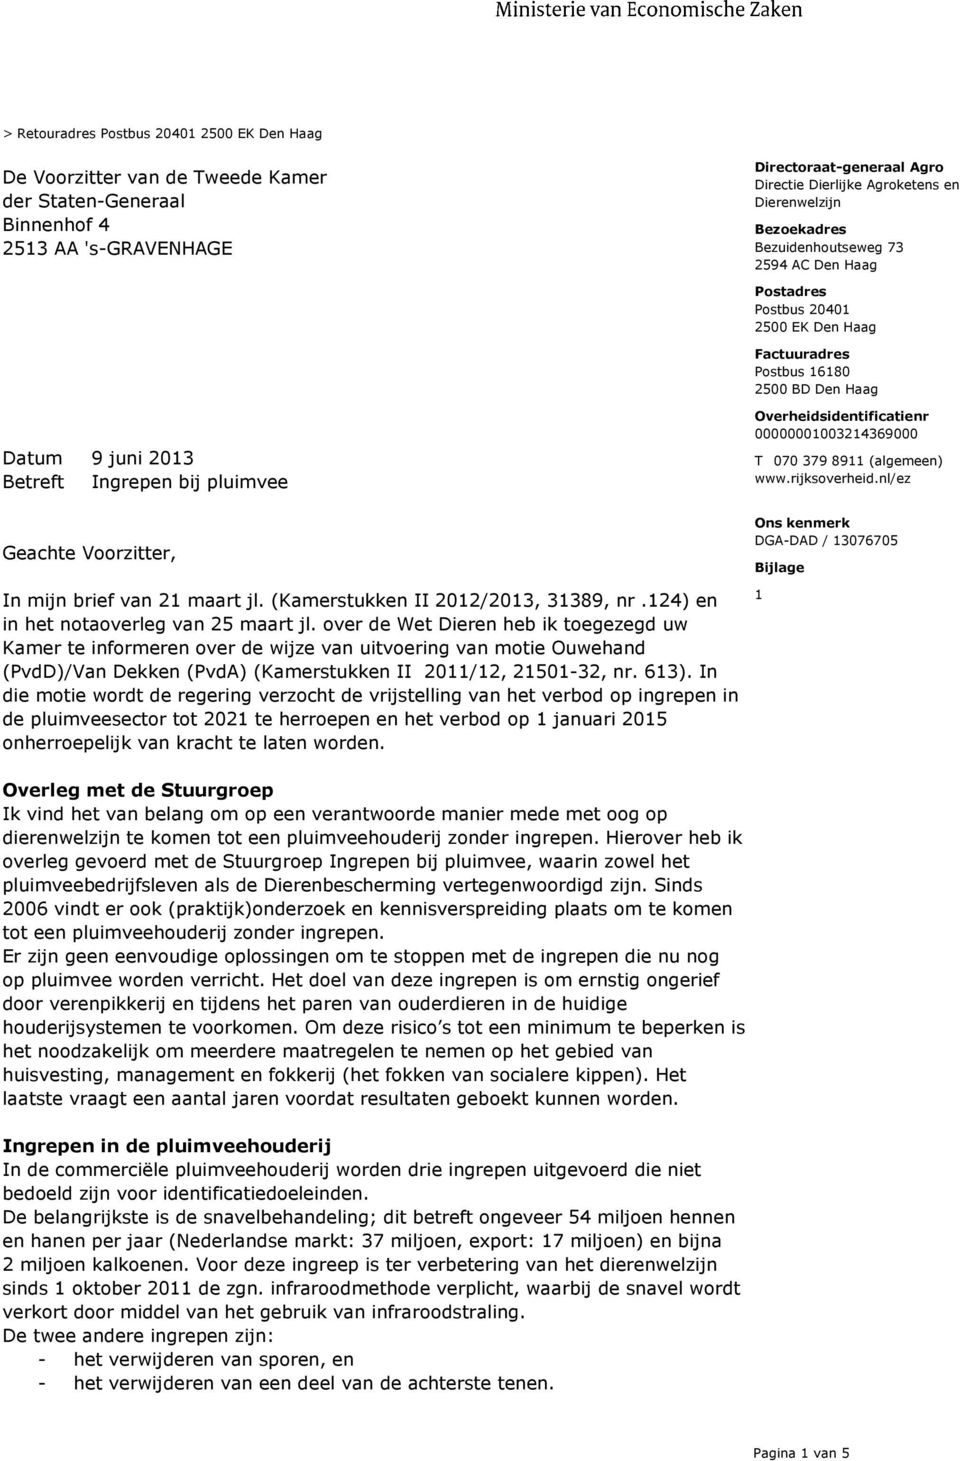 8911 (algemeen) www.rijksoverheid.nl/ez Geachte Voorzitter, In mijn brief van 21 maart jl. (Kamerstukken II 2012/2013, 31389, nr.124) en in het notaoverleg van 25 maart jl.